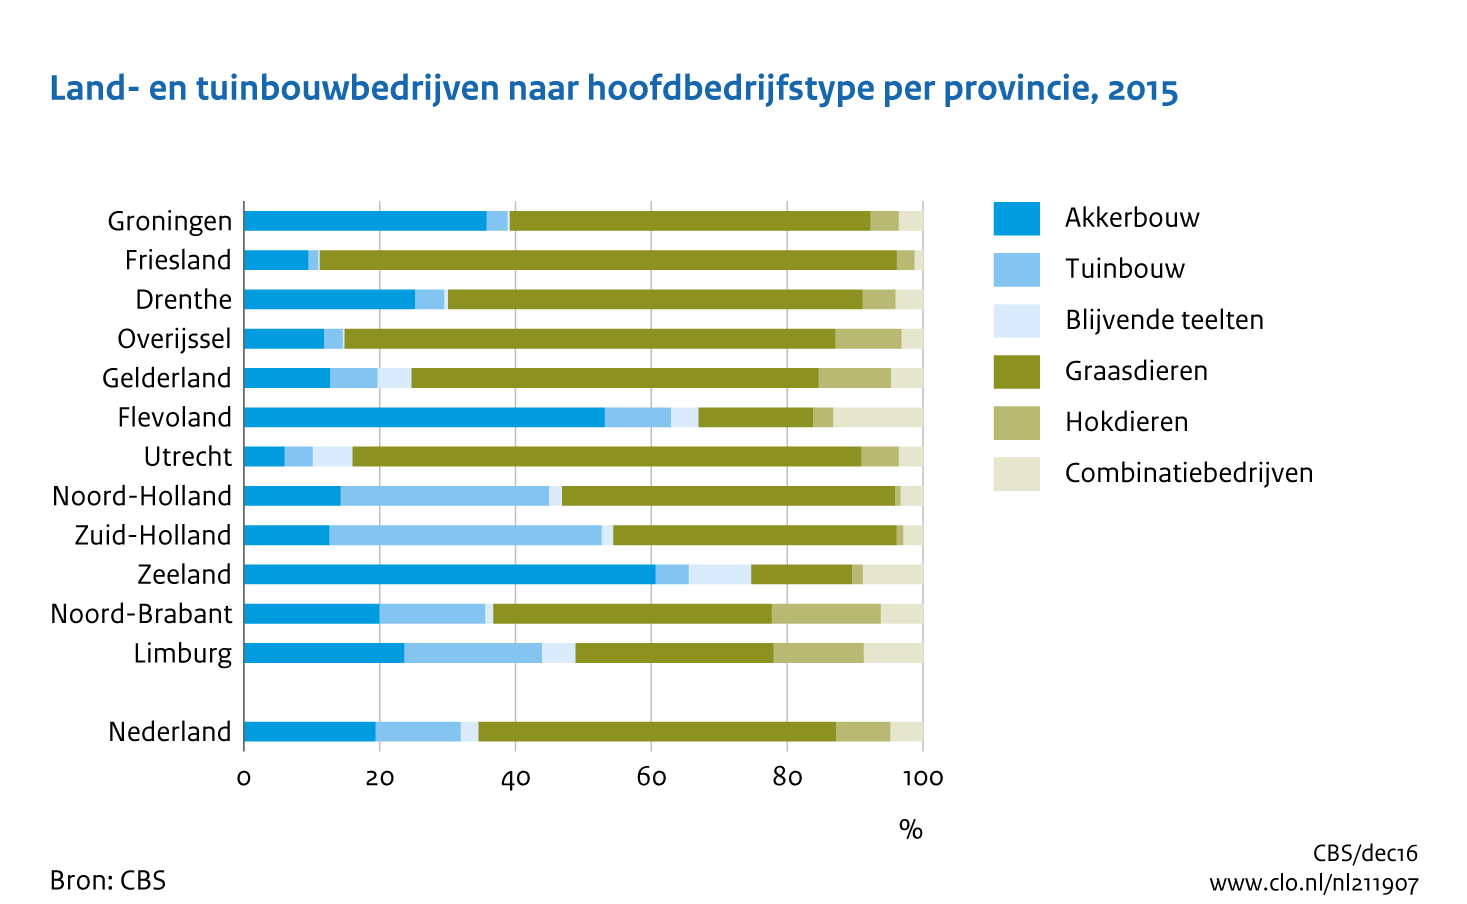 Figuur  Land- en tuinbouwbedrijven naar hoofdbedrijfstype per provincie, 2015. In de rest van de tekst wordt deze figuur uitgebreider uitgelegd.